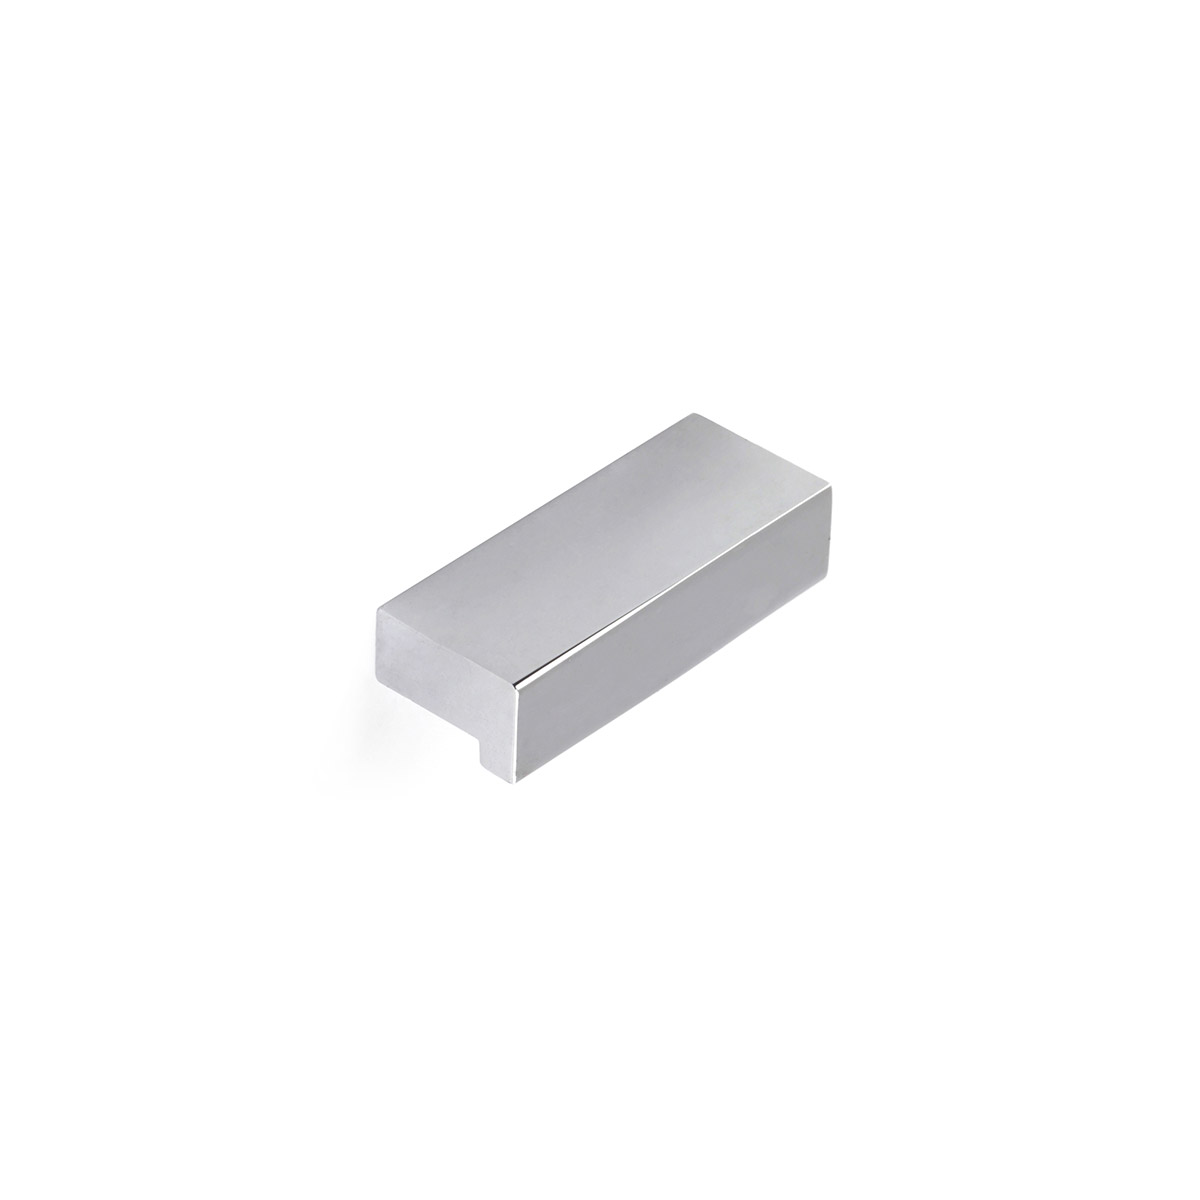 Asa de aluminio con acabado cromo brillo, dimensiones:44x12x18mm y entrepuntos:32mm